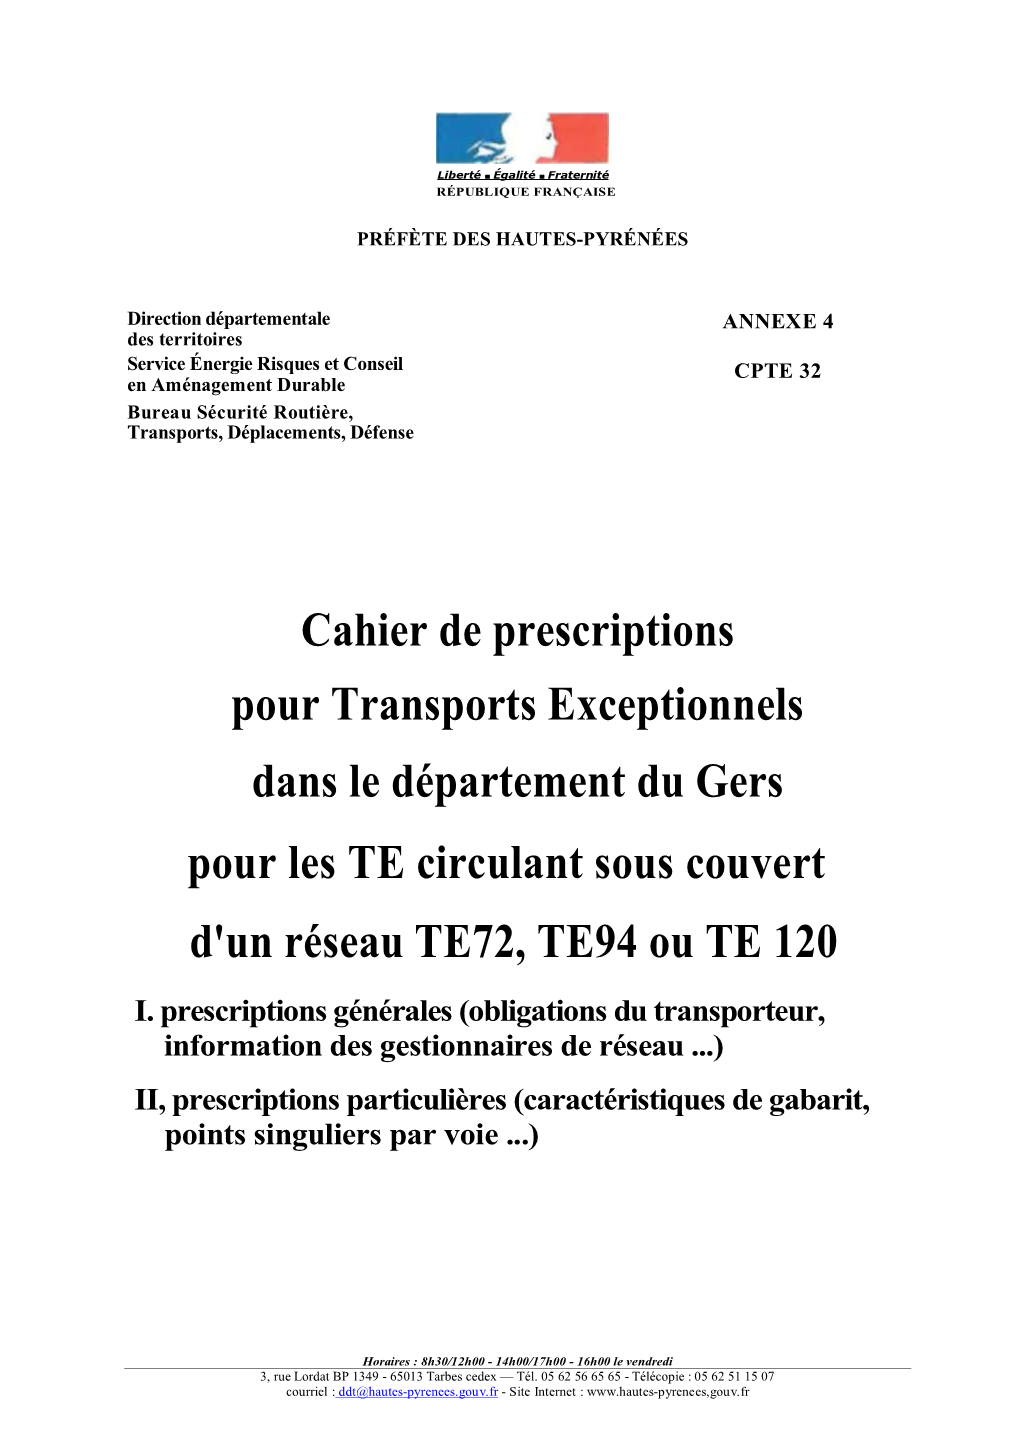 Cahier De Prescriptions Pour Transports Exceptionnels Dans Le Département Du Gers Pour Les TE Circulant Sous Couvert D'un Réseau TE72, TE94 Ou TE 120 I